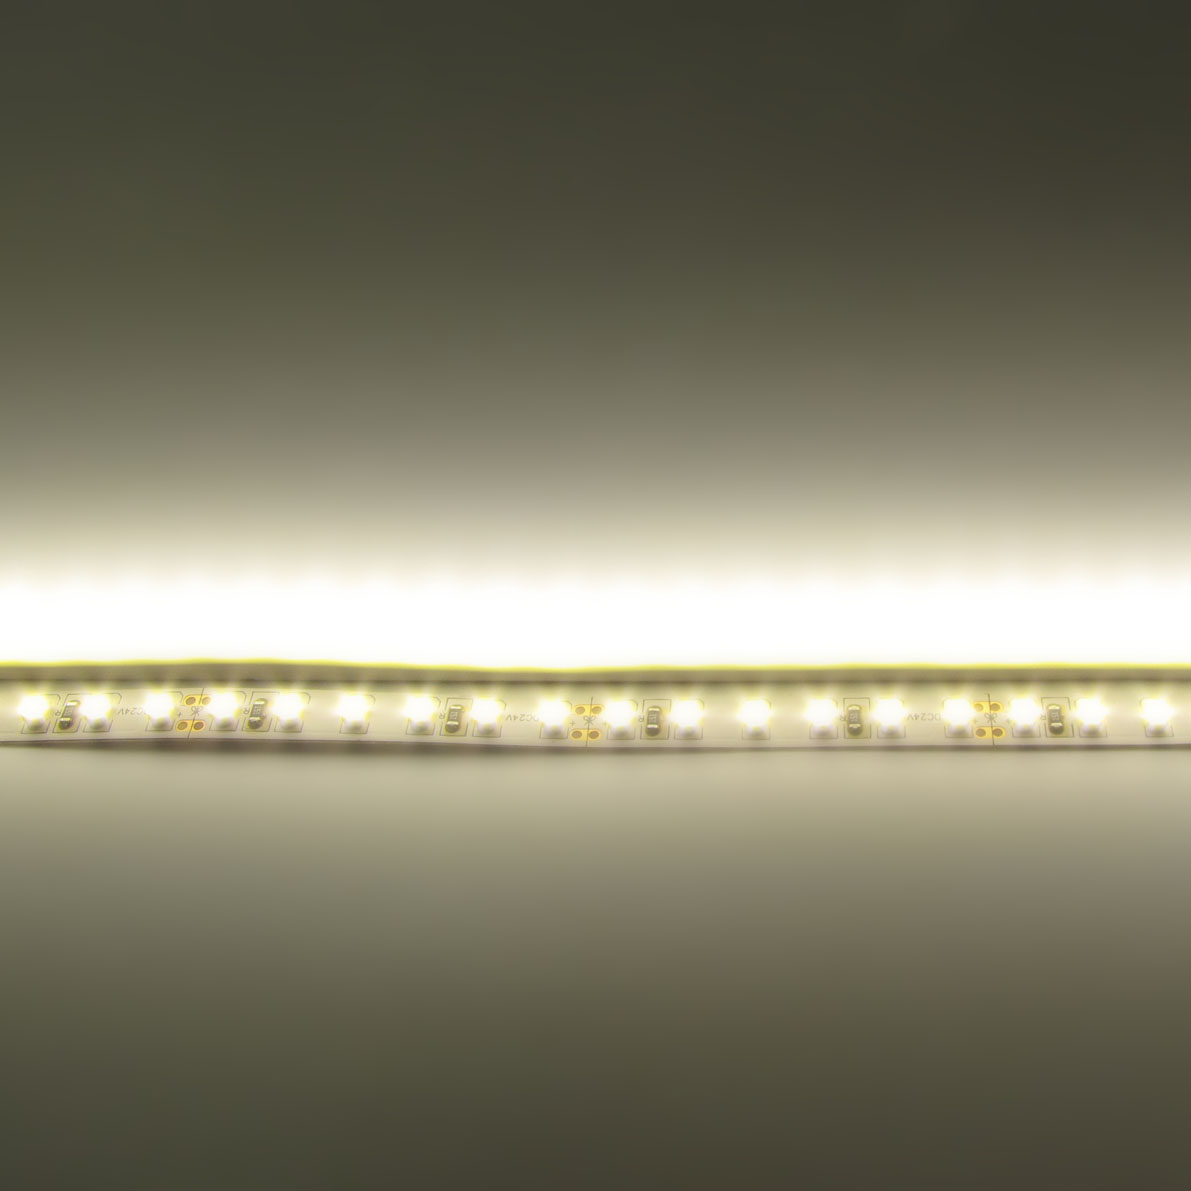 светодиодная лента standart pro class , 3528, 120 led/m, warm white, 24v, ip33, артикул 54279